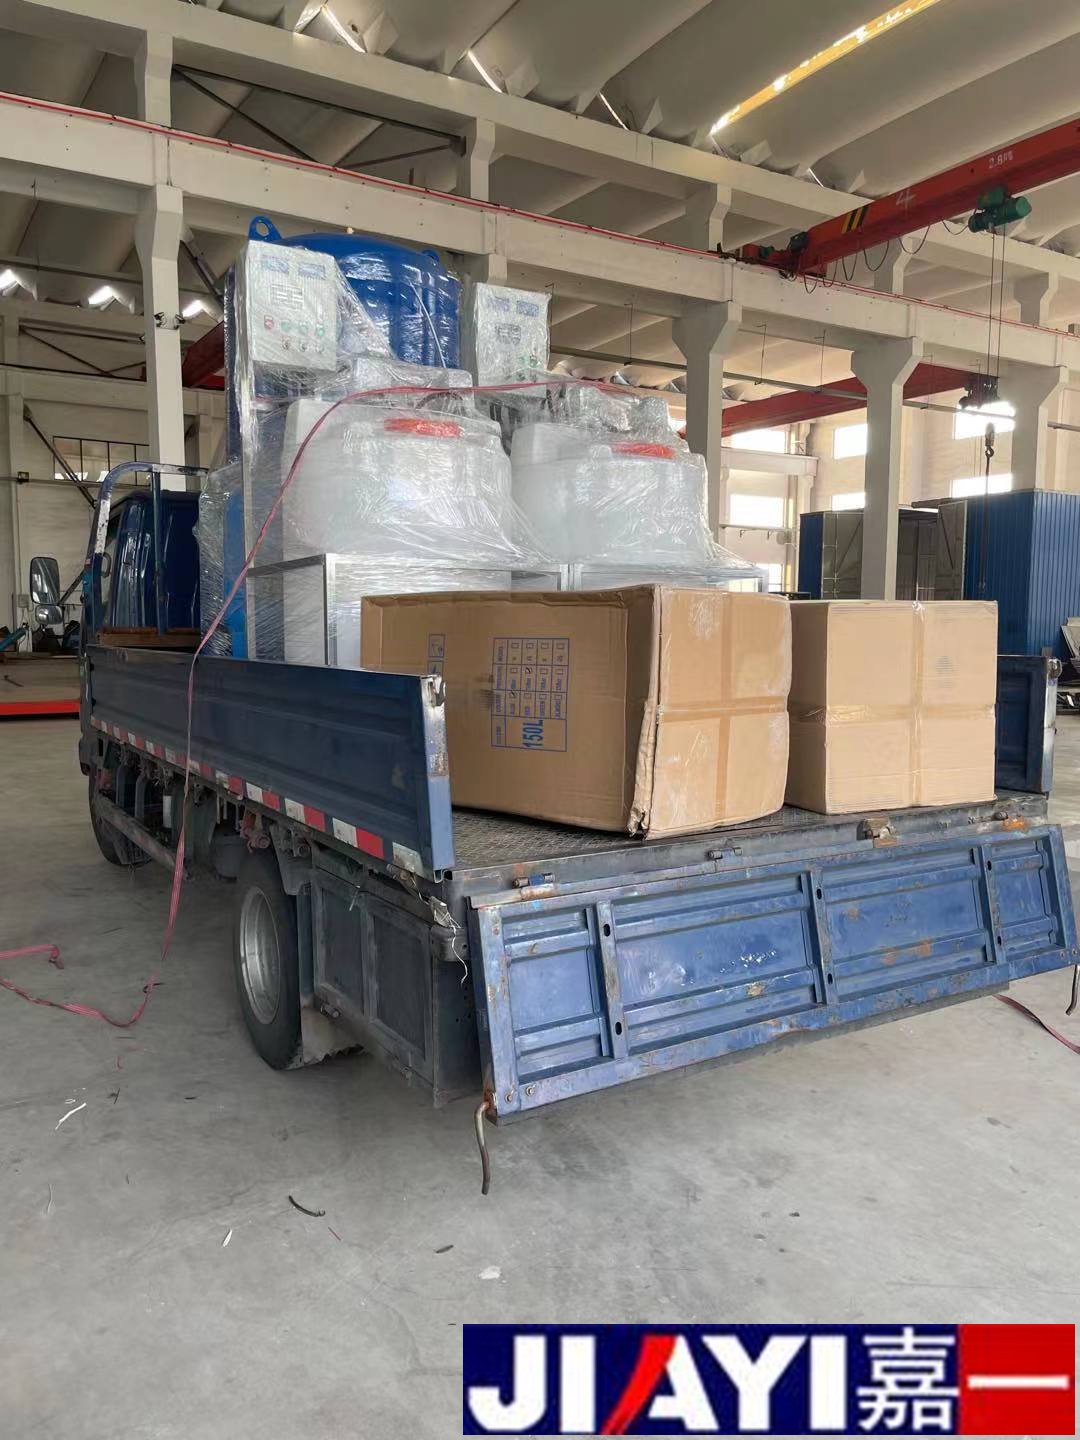 集成水保机组和全自动加药装置整车直达湖北武汉